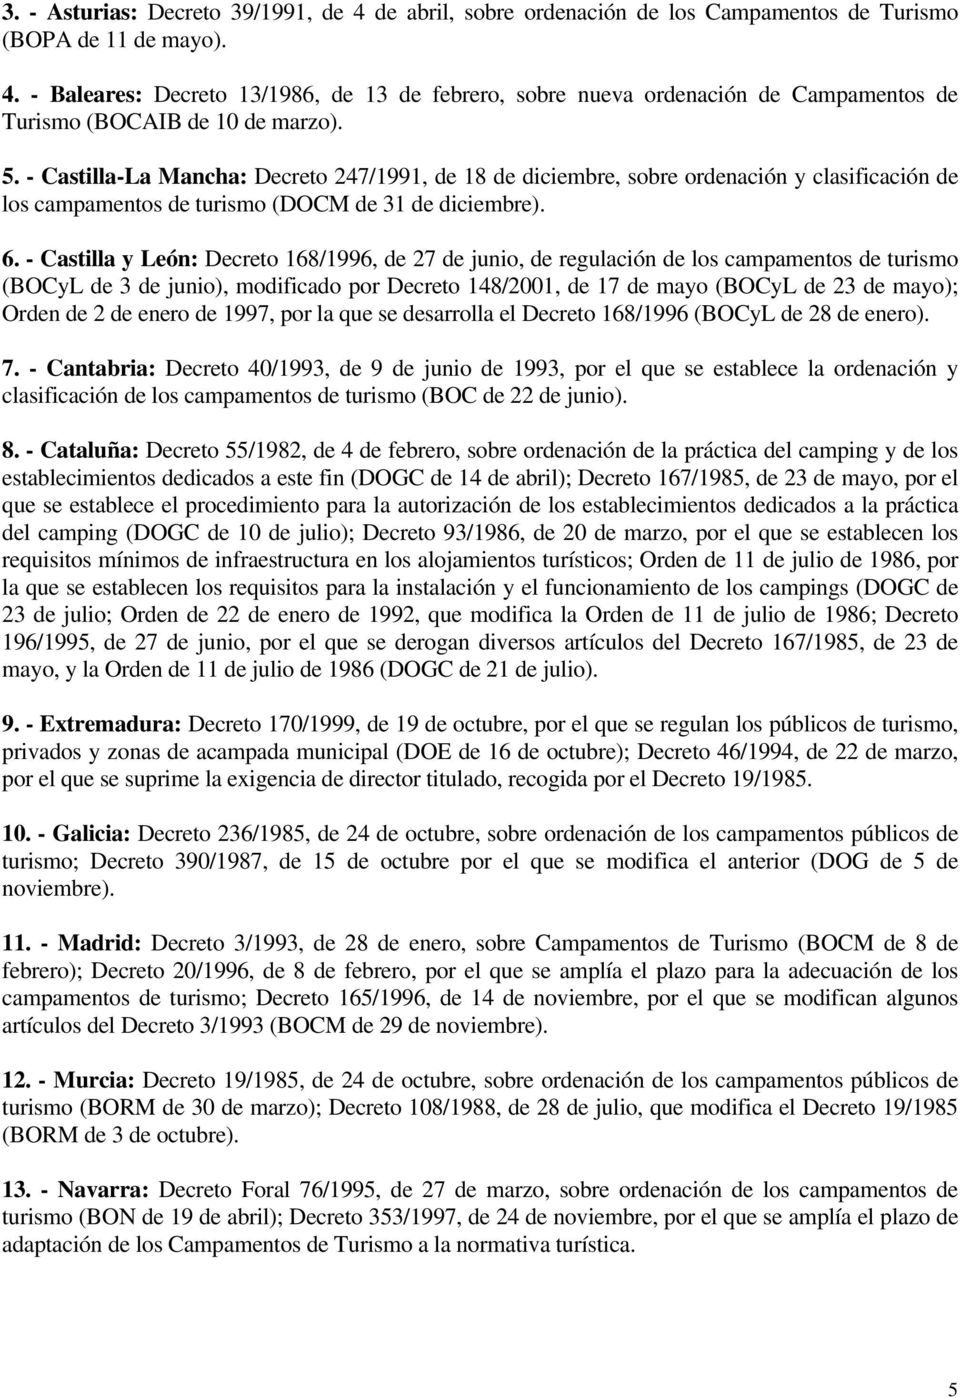 - Castilla y León: Decreto 168/1996, de 27 de junio, de regulación de los campamentos de turismo (BOCyL de 3 de junio), modificado por Decreto 148/2001, de 17 de mayo (BOCyL de 23 de mayo); Orden de